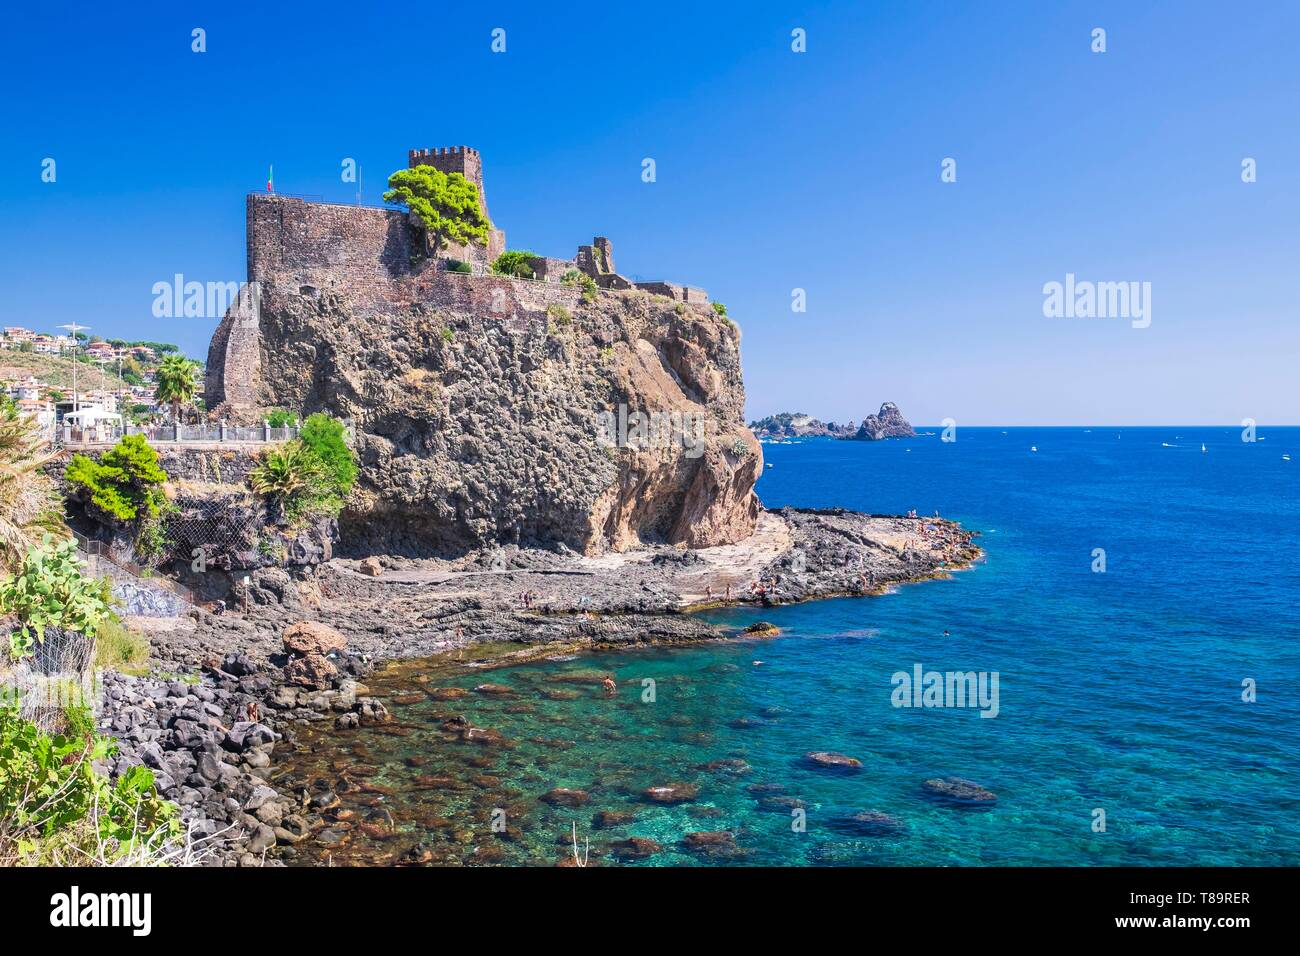 L'Italia, sicilia, Aci Castello, il castello di Aci di origine bizantina ristrutturato dai Normanni su uno sperone roccioso proteso verso il mare Foto Stock